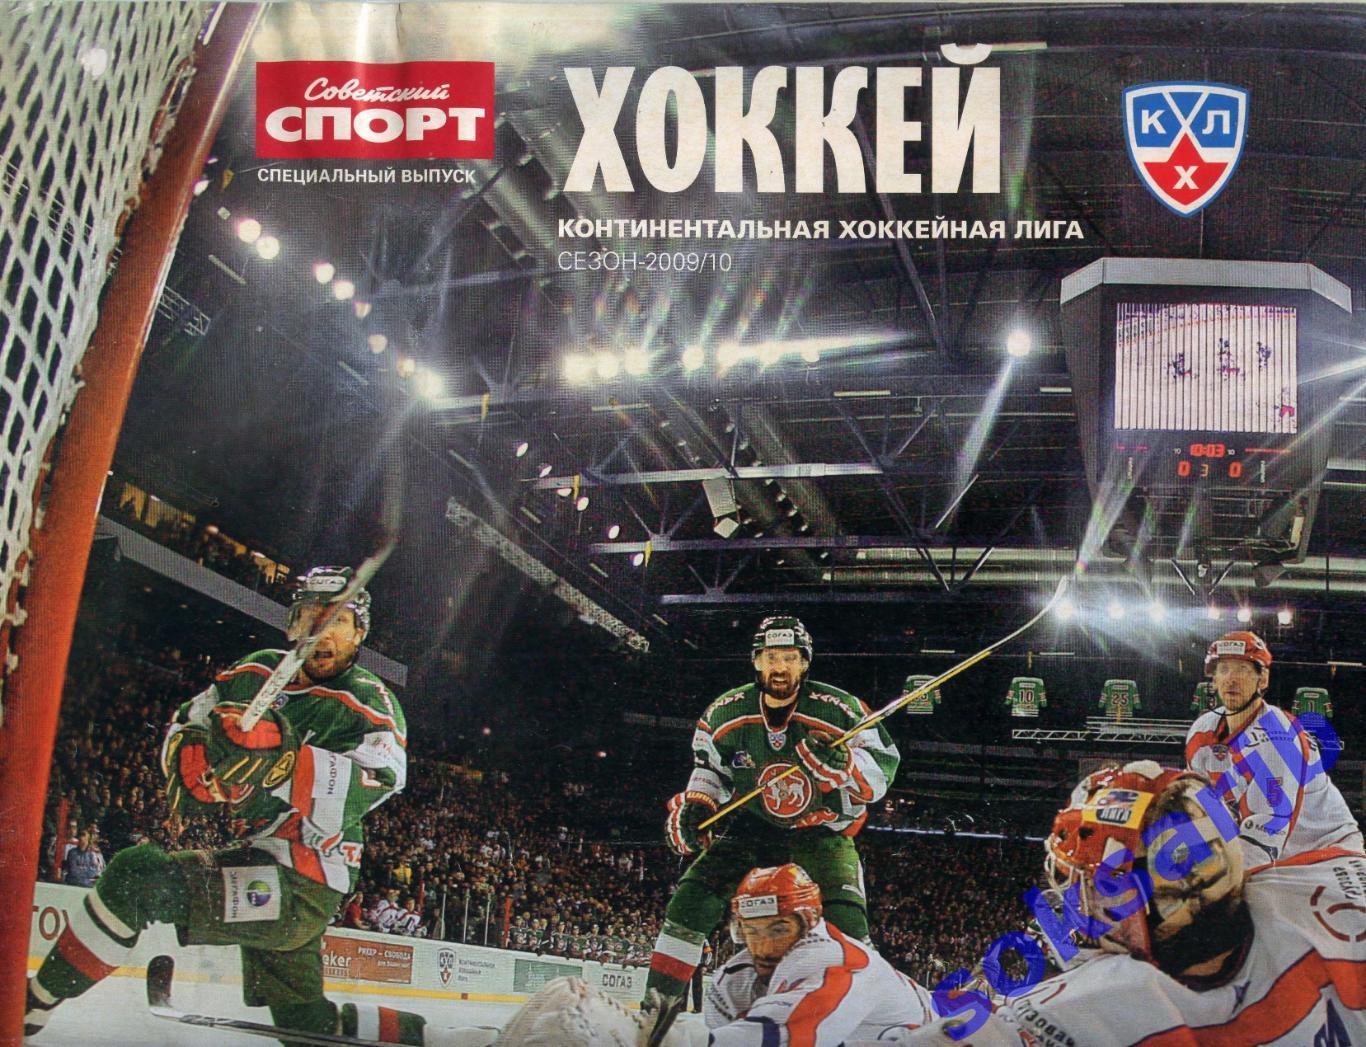 Советский спорт Хоккей. КХЛ 2009/10. Специальный выпуск.